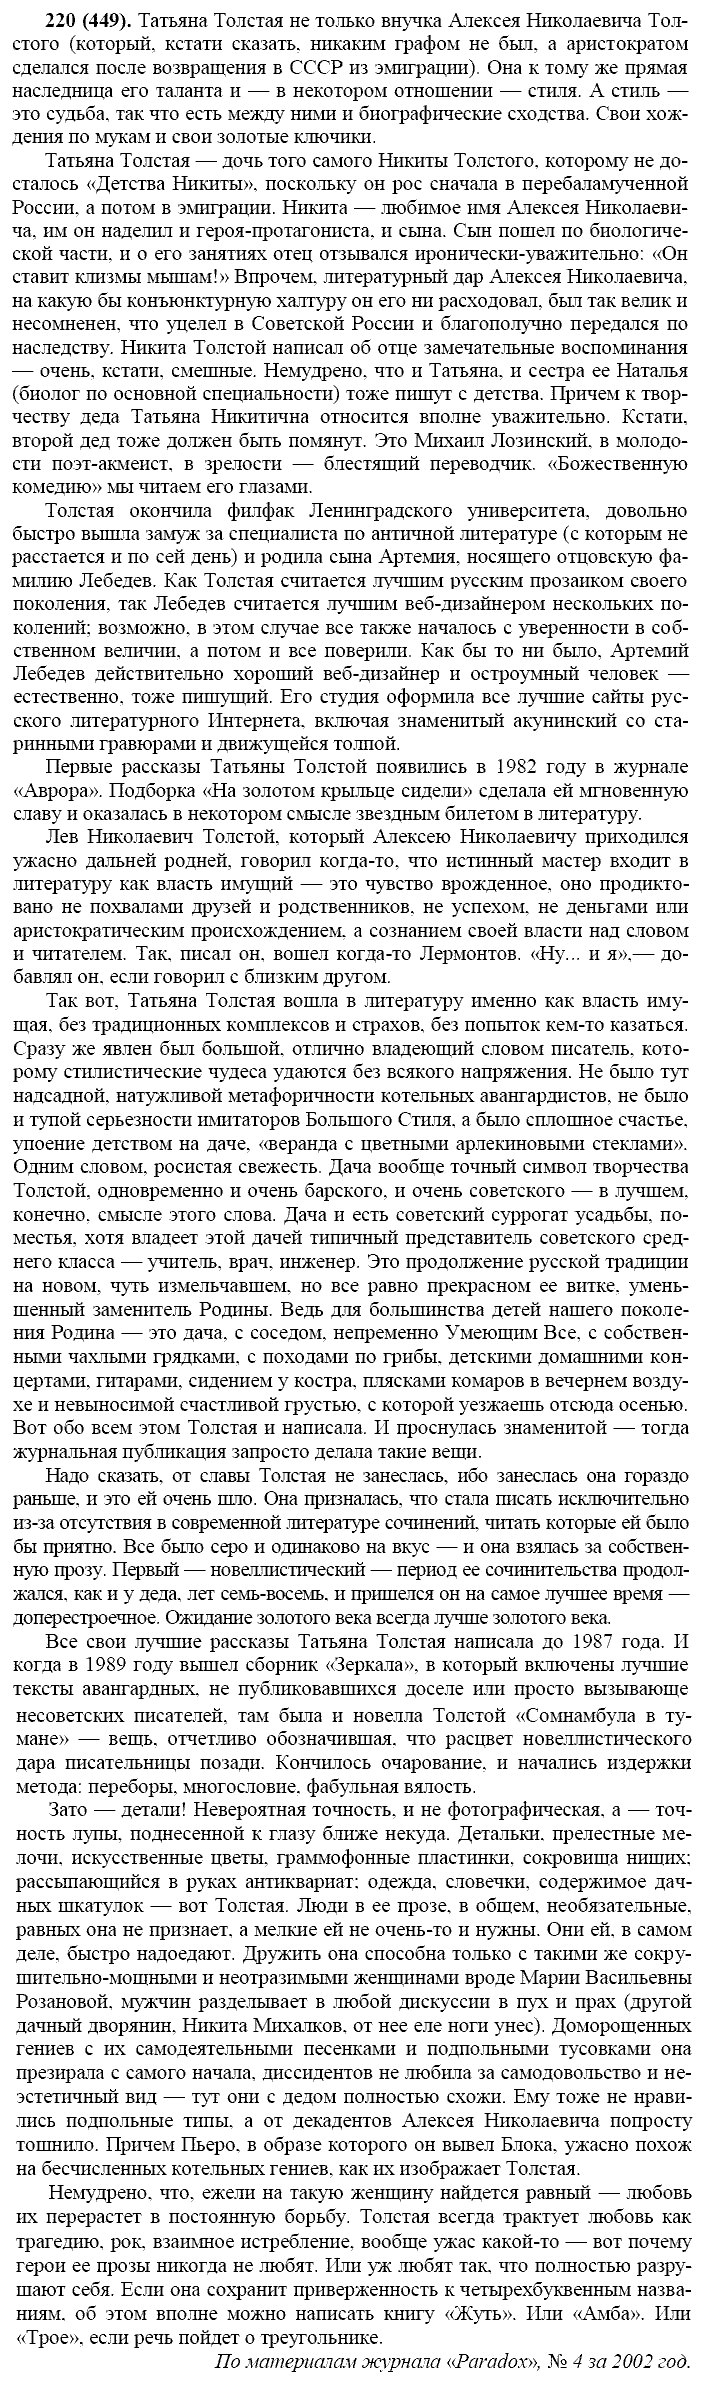 Русский язык, 11 класс, Власенков, Рыбченков, 2009-2014, задание: 220 (449)